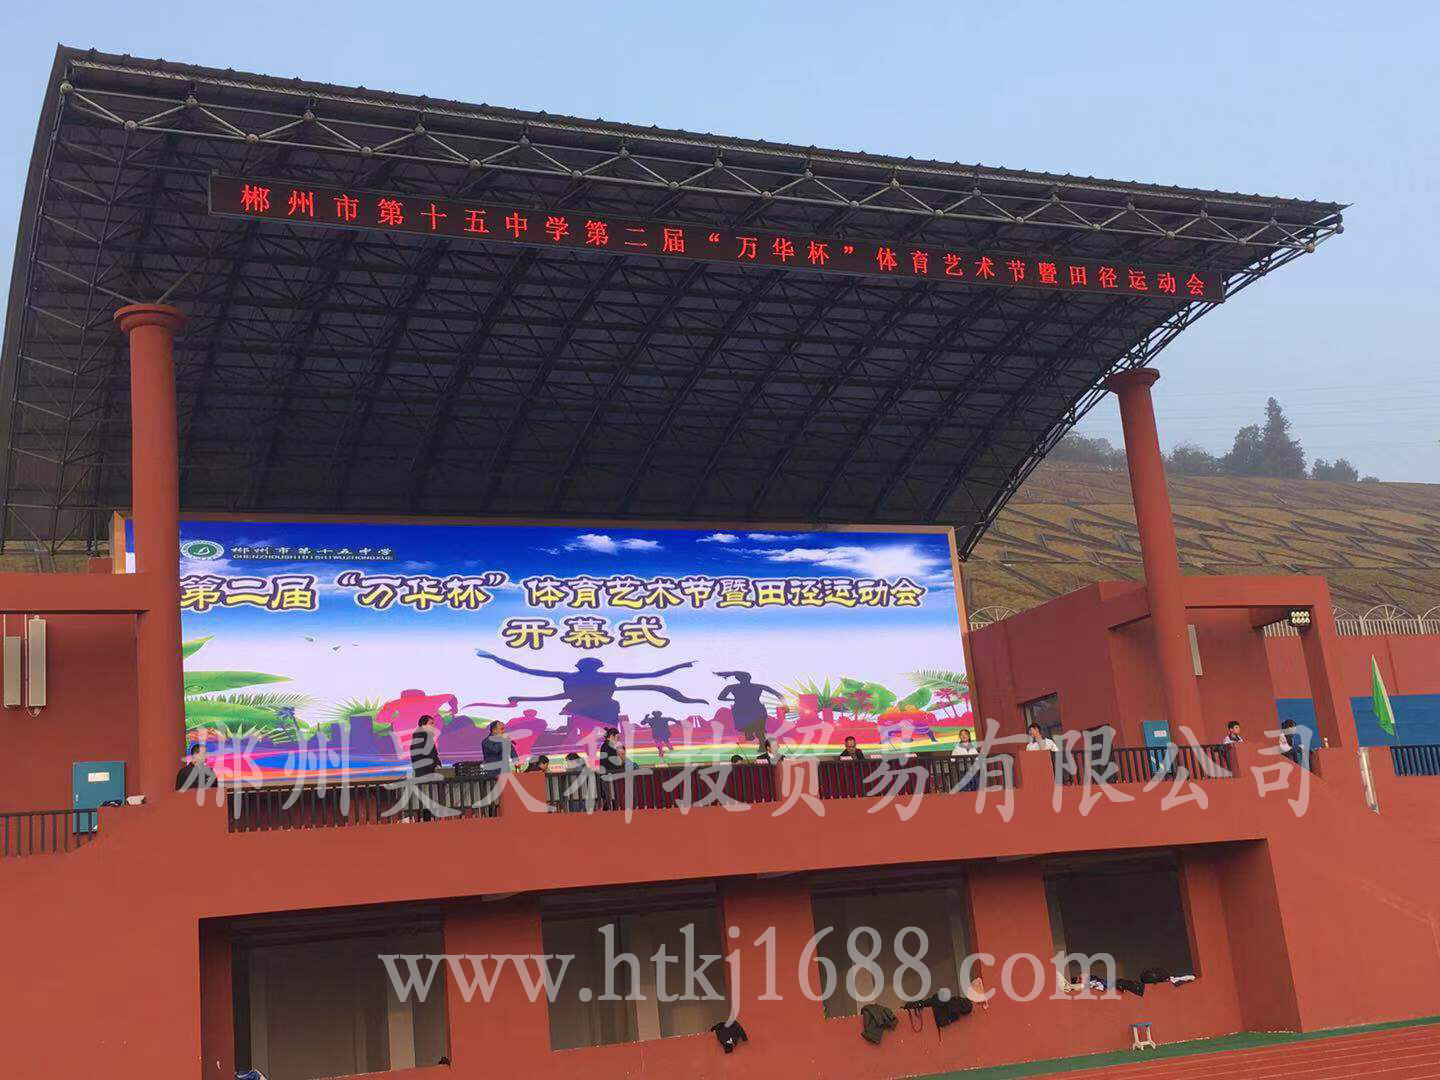 郴州市第十五中學足球場看臺LED大屏顯示屏系統采購